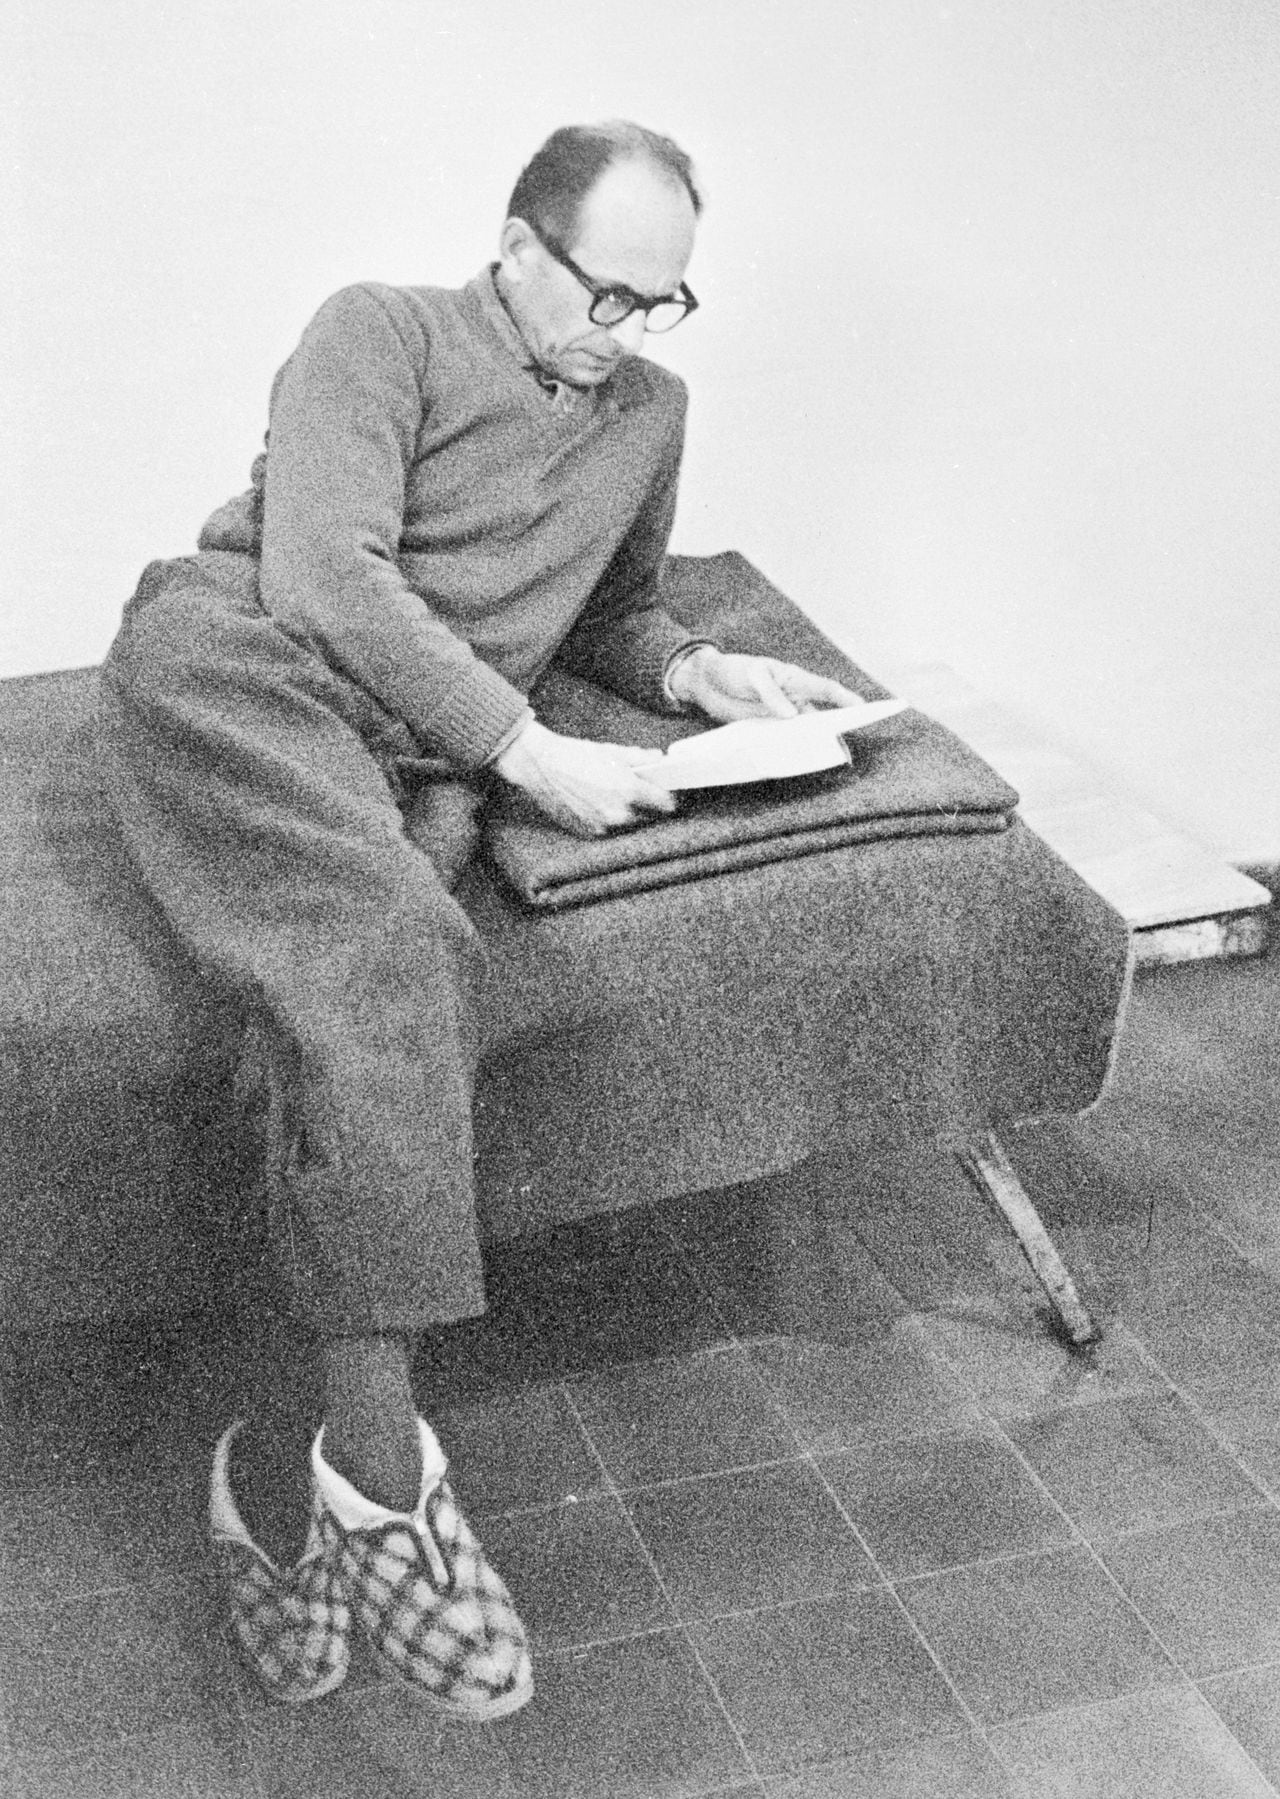 Nazaret, Israel: Eichmann lee en la celda. El exlíder nazi Adolf Eichmann, acusado de dirigir el exterminio masivo de judíos durante la Segunda Guerra Mundial, lee en su celda en la fortaleza de Teggart, cerca de Nazaret. Esta foto fue publicada el 6 de abril de 1959. Eichmann fue trasladado en secreto a Jerusalén el 4 de abril, donde será fue juzgado el 11 de abril.